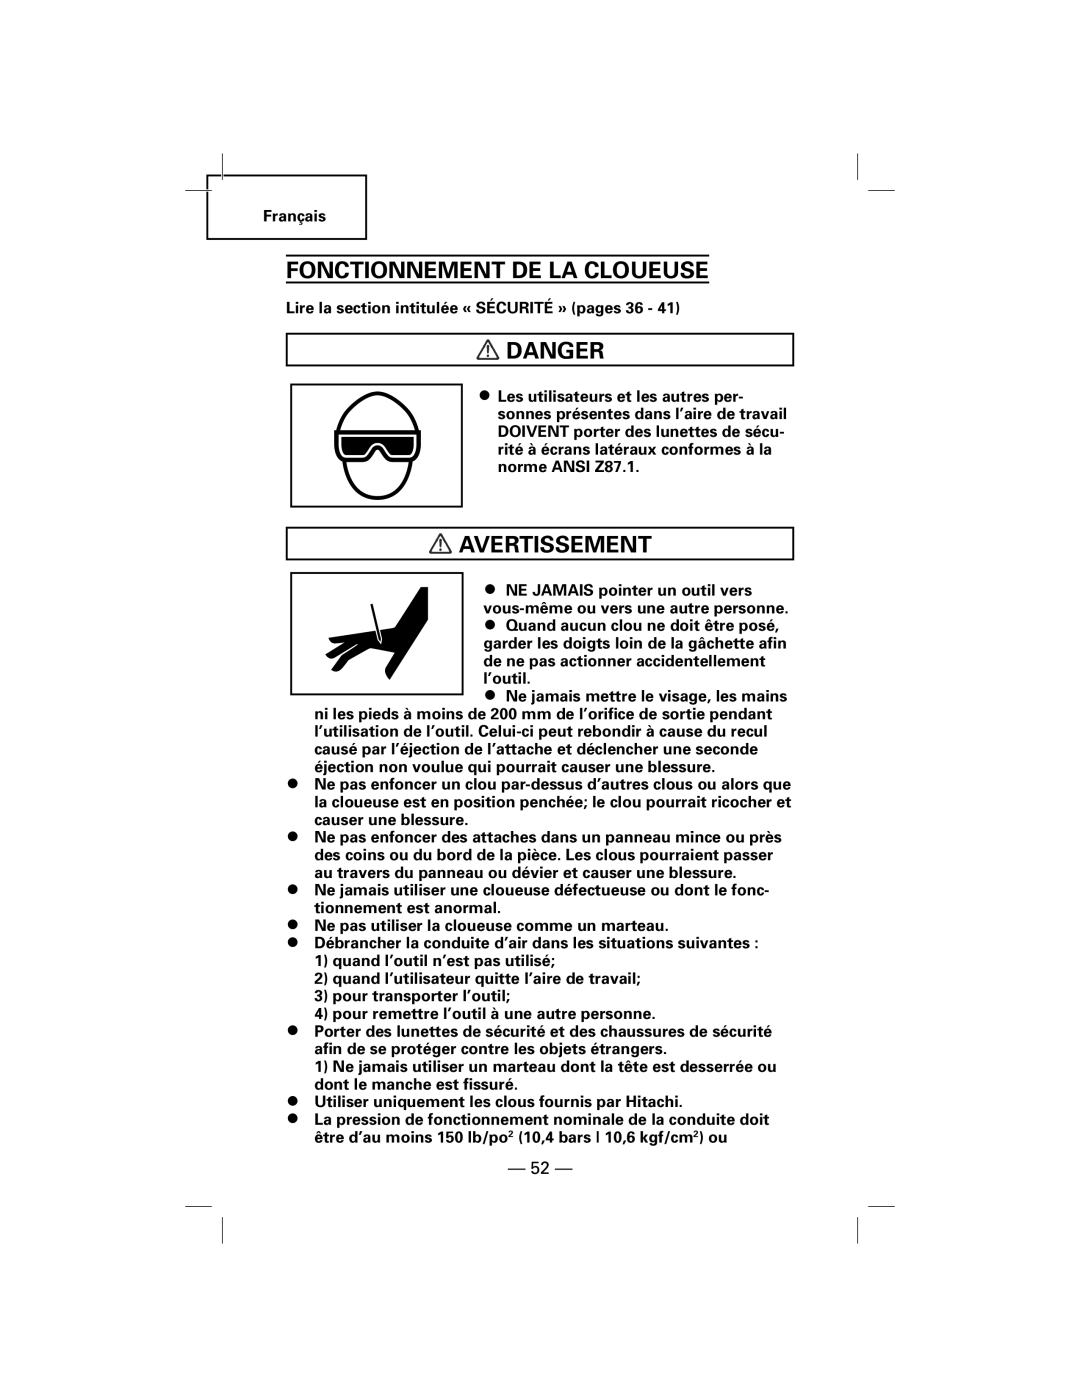 Hitachi NT50AGF manual Fonctionnement De La Cloueuse, Danger, Avertissement 